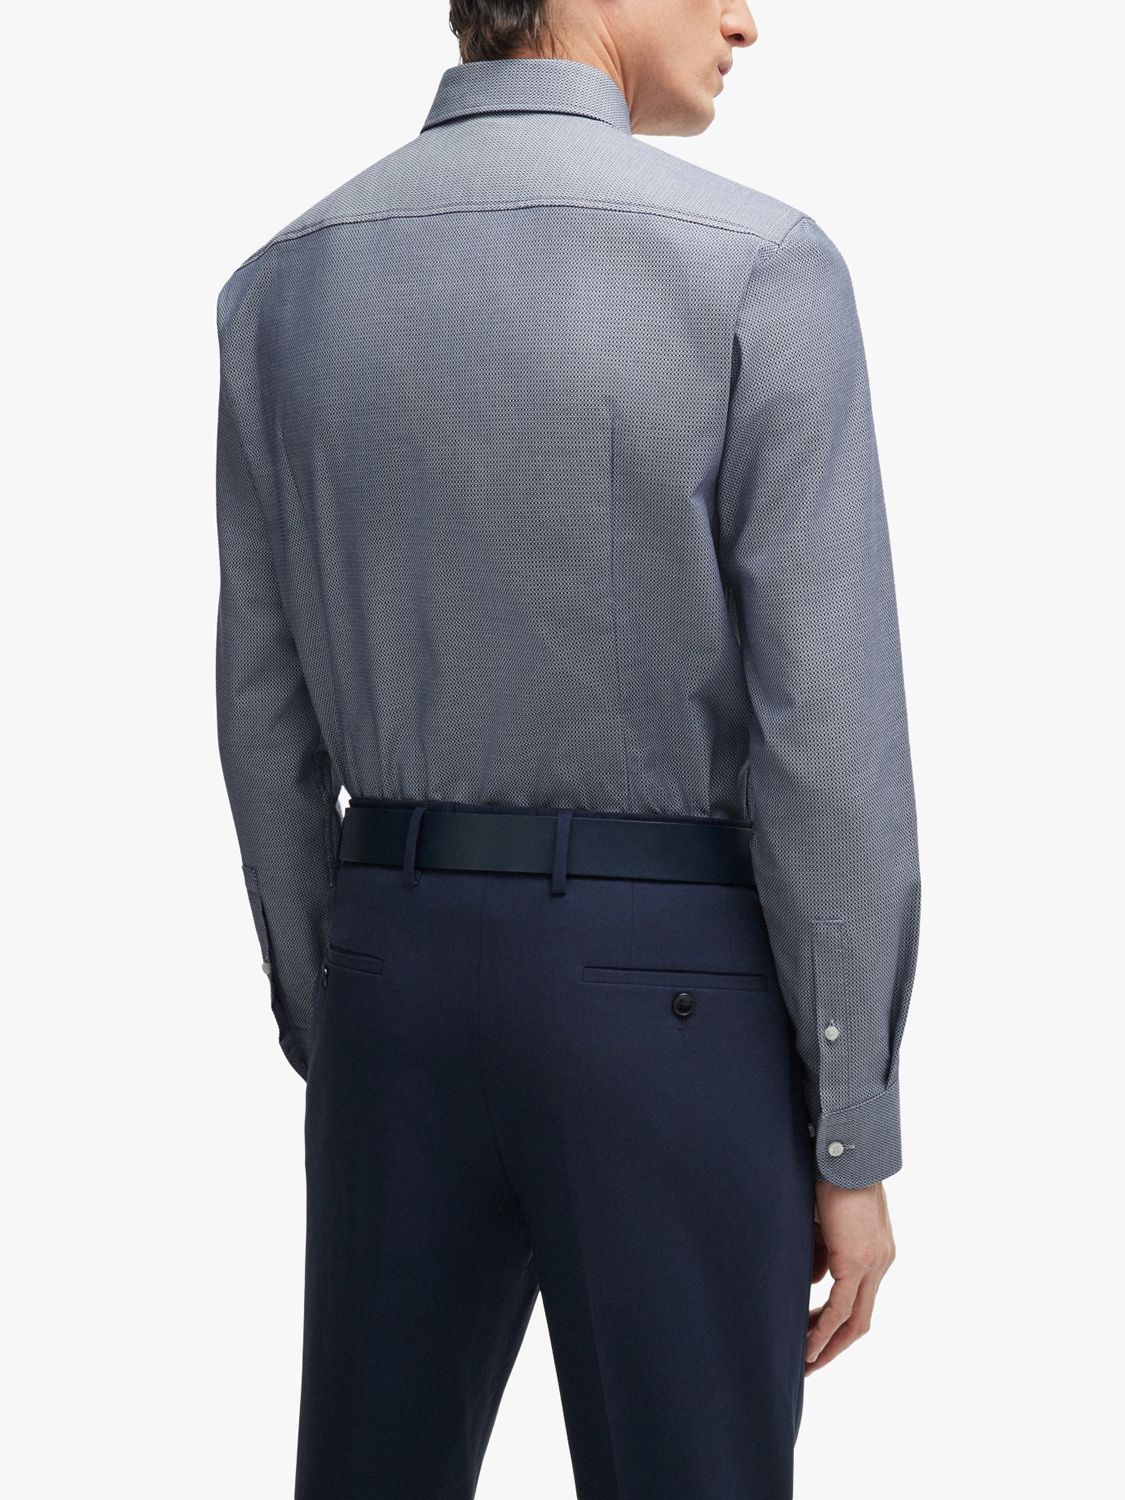 BOSS H-Hank Spread Slim Fit Shirt, Navy, 17.75L